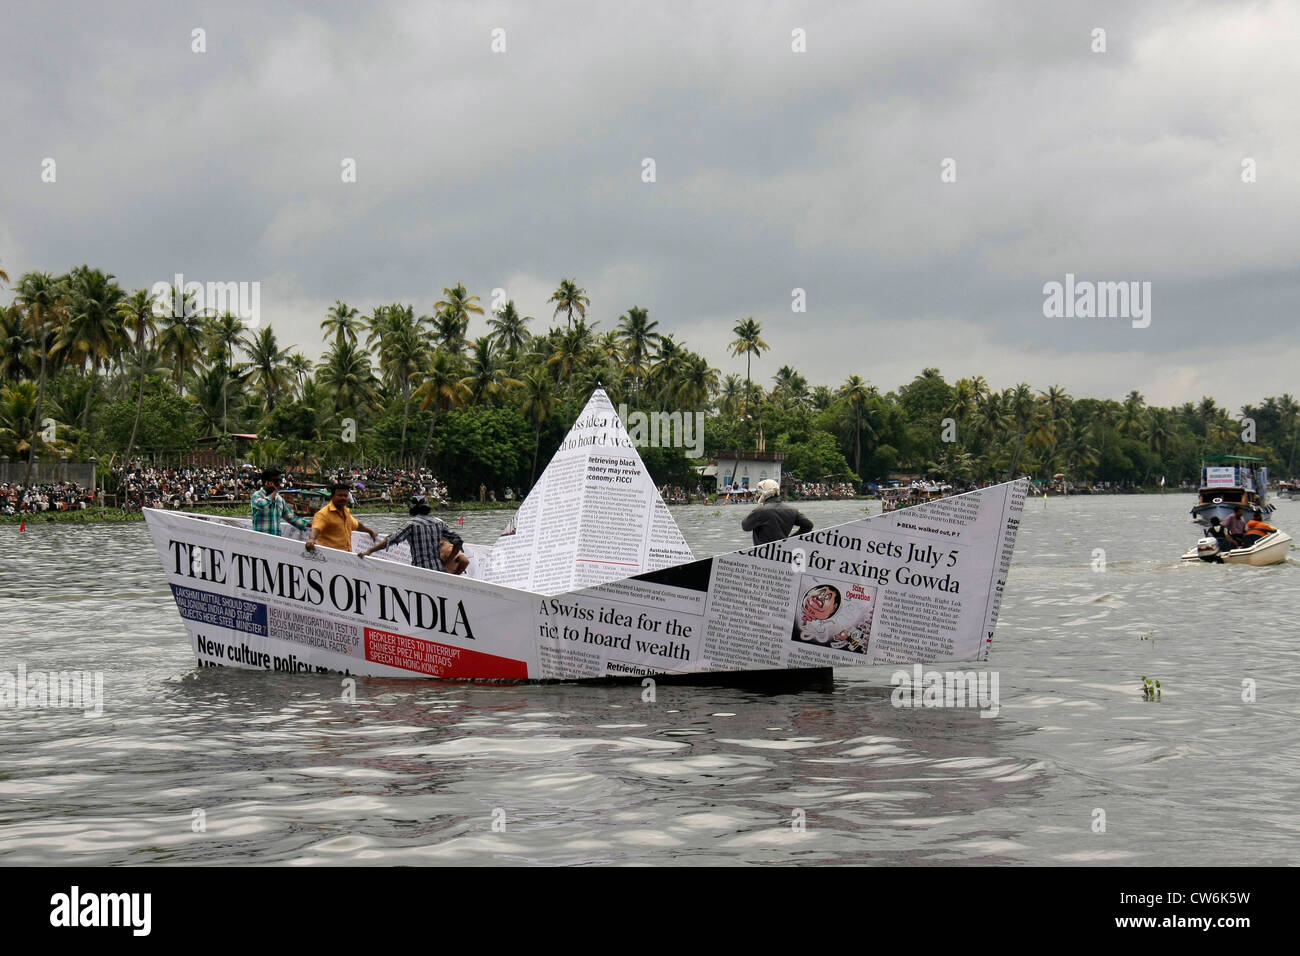 Drôle insolite étrange news paper boat dans l'eau au cours de Nehru trophy boat race serpent dans alleppey alappuzha anciennement,kerala,Inde,pradeep subramanian Banque D'Images